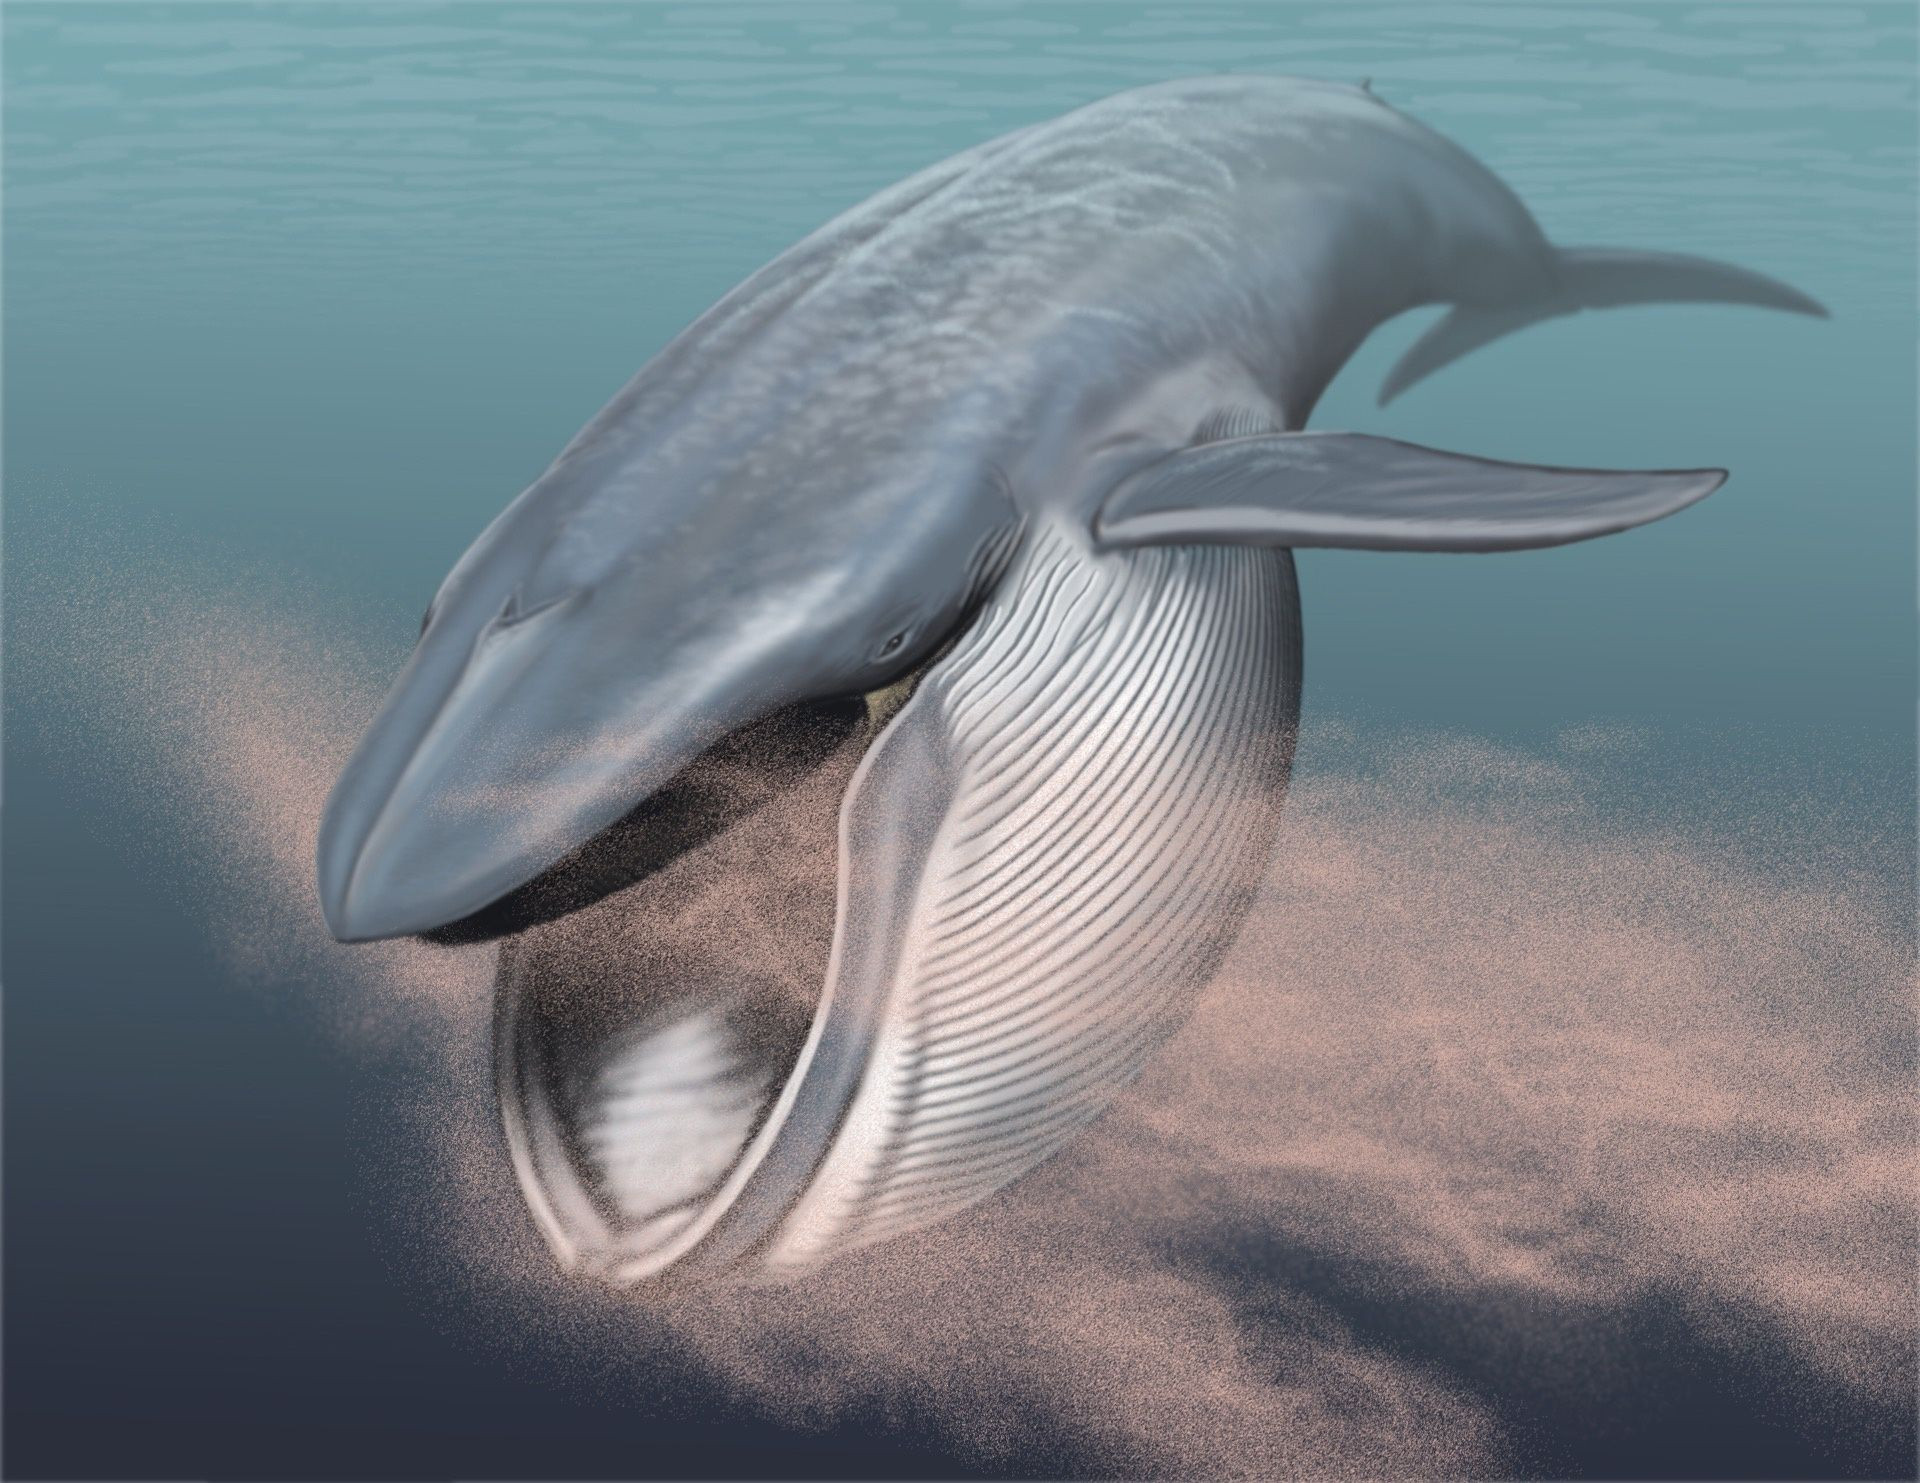 Cá voi lưng gù tiêu thụ hơn 18.000 tấn thức ăn mỗi ngày - 2